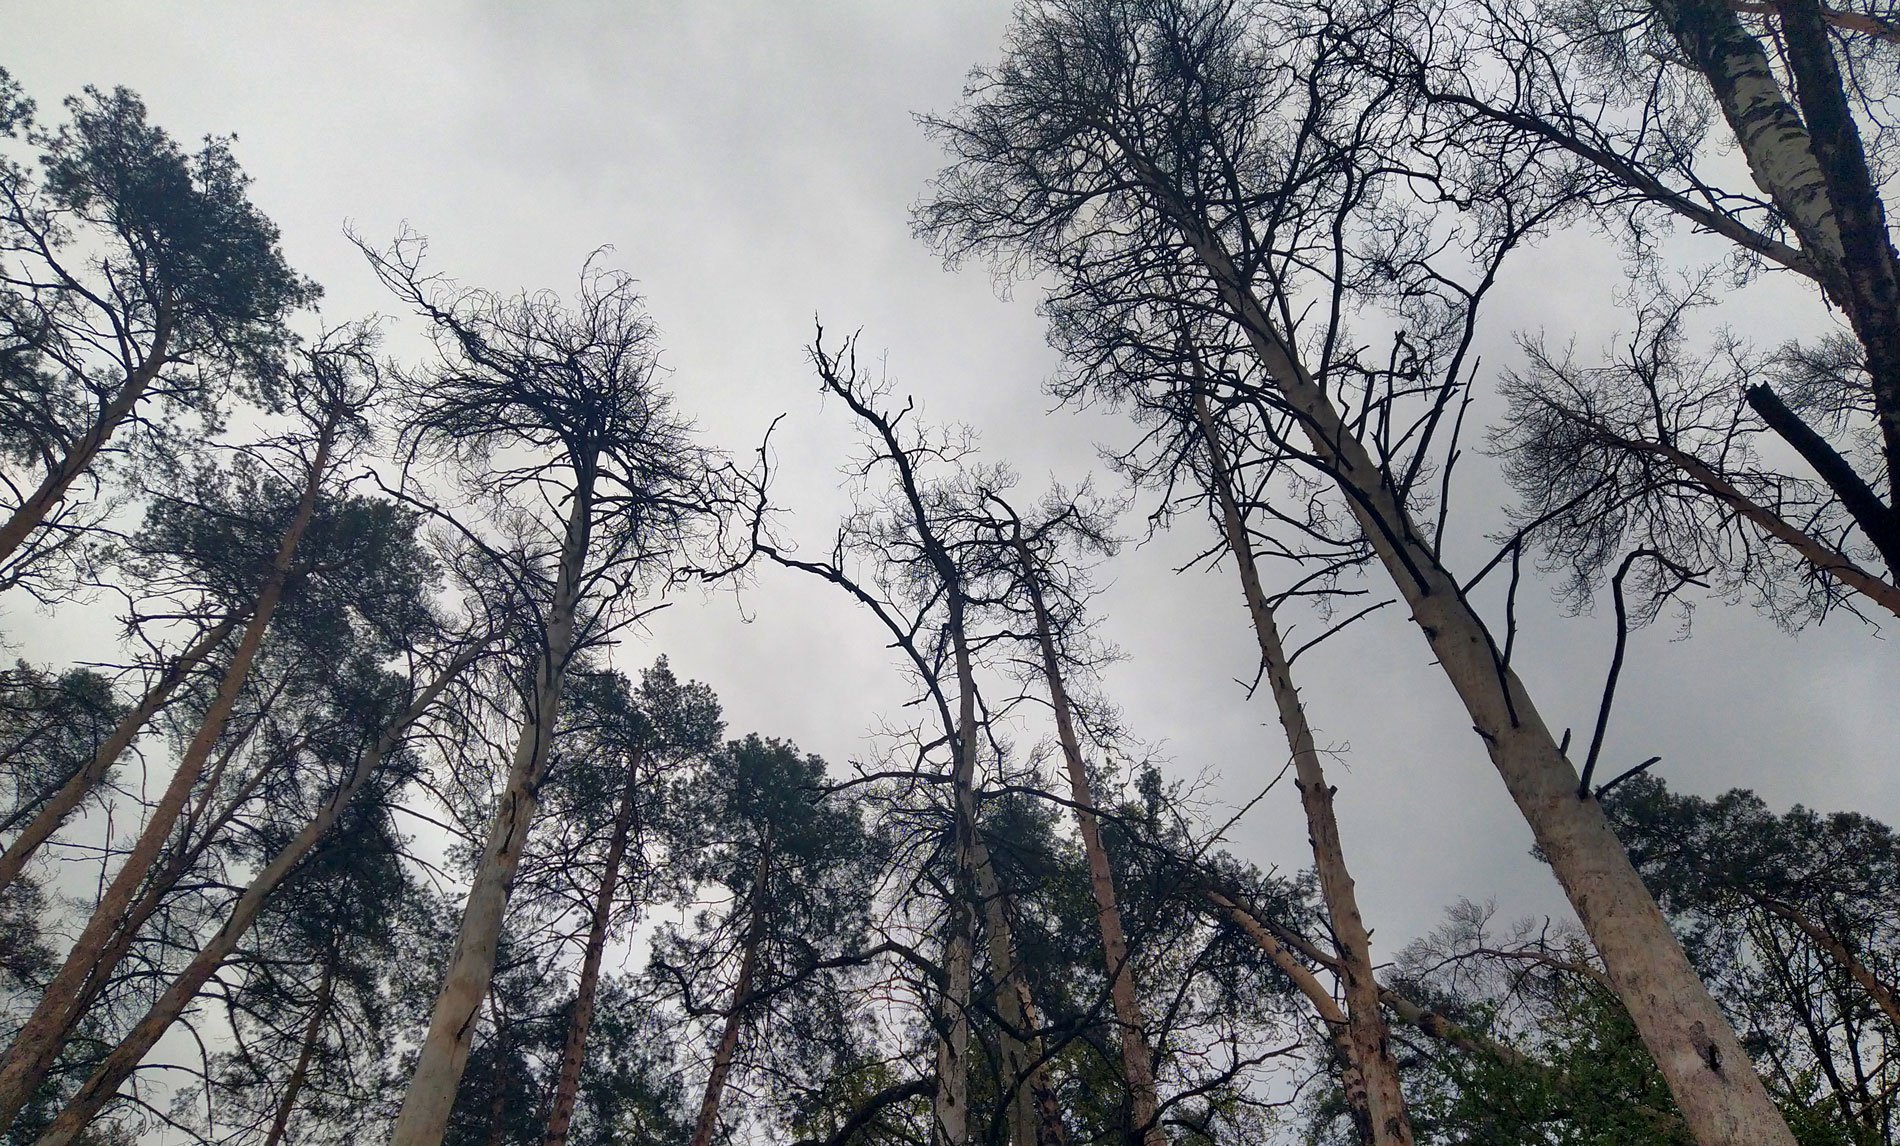 Ліс, ушкоджений пожежею кілька років тому. Пожежа виникла на торфовищі поруч